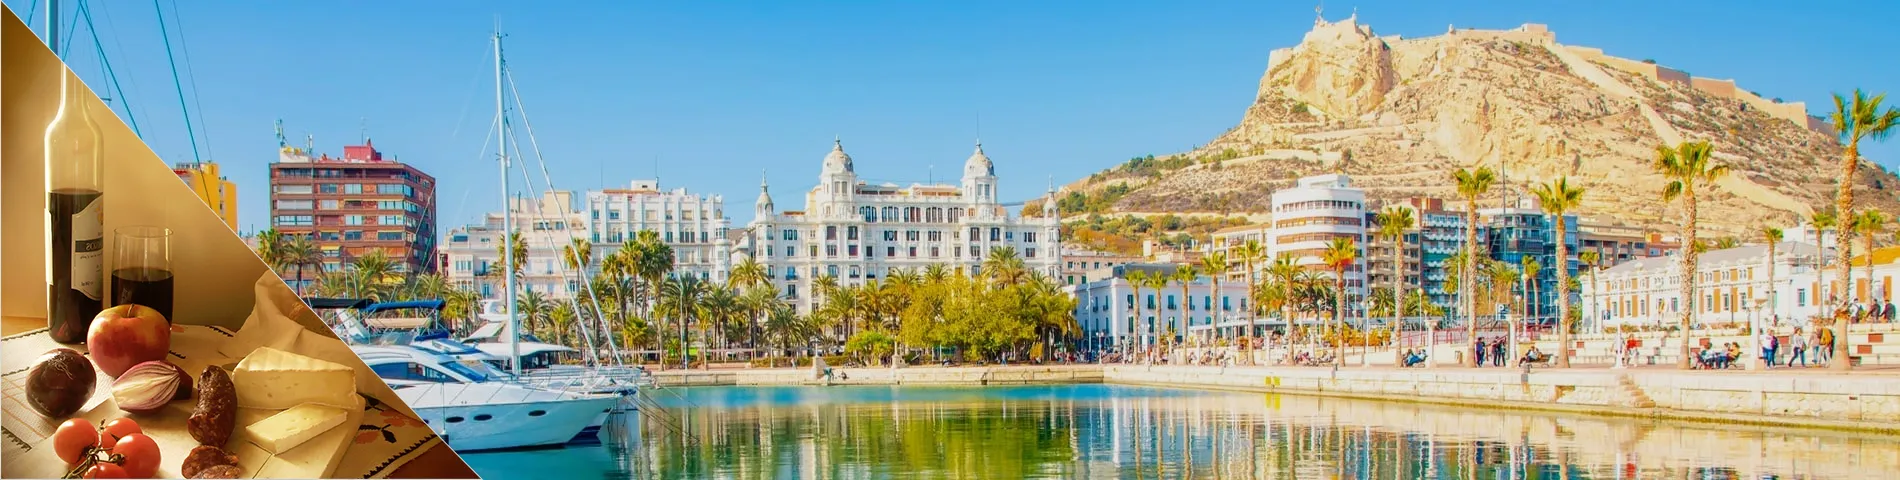 Alicante - Spanska & kultur